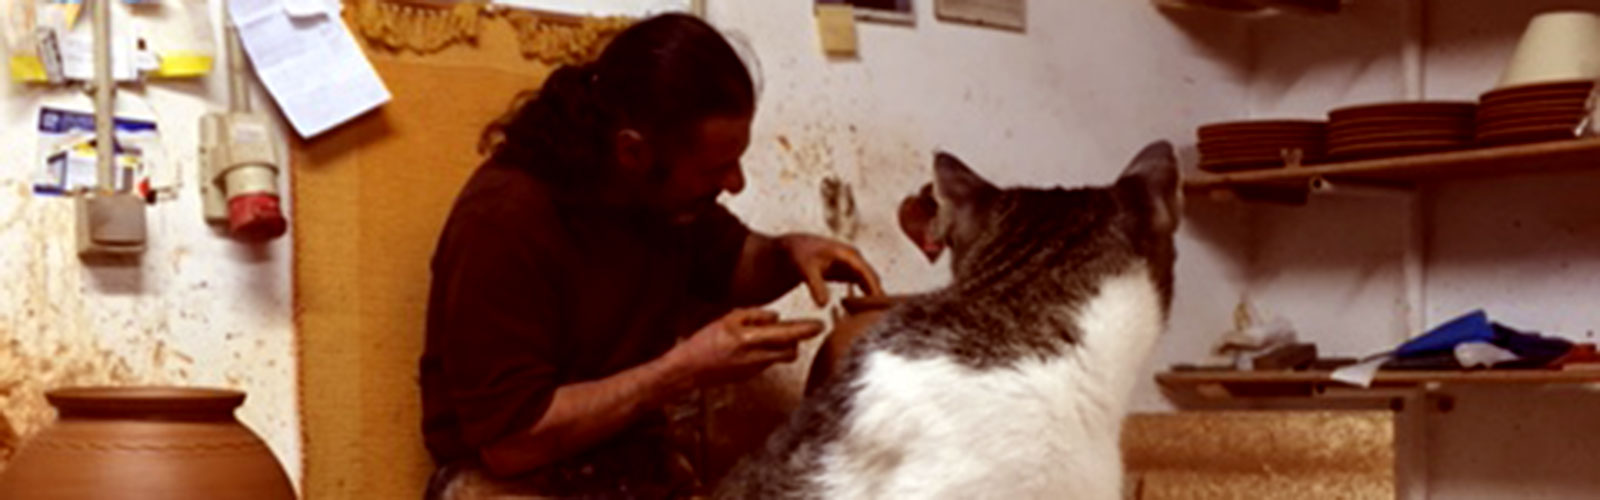 The ceramicist and his cat